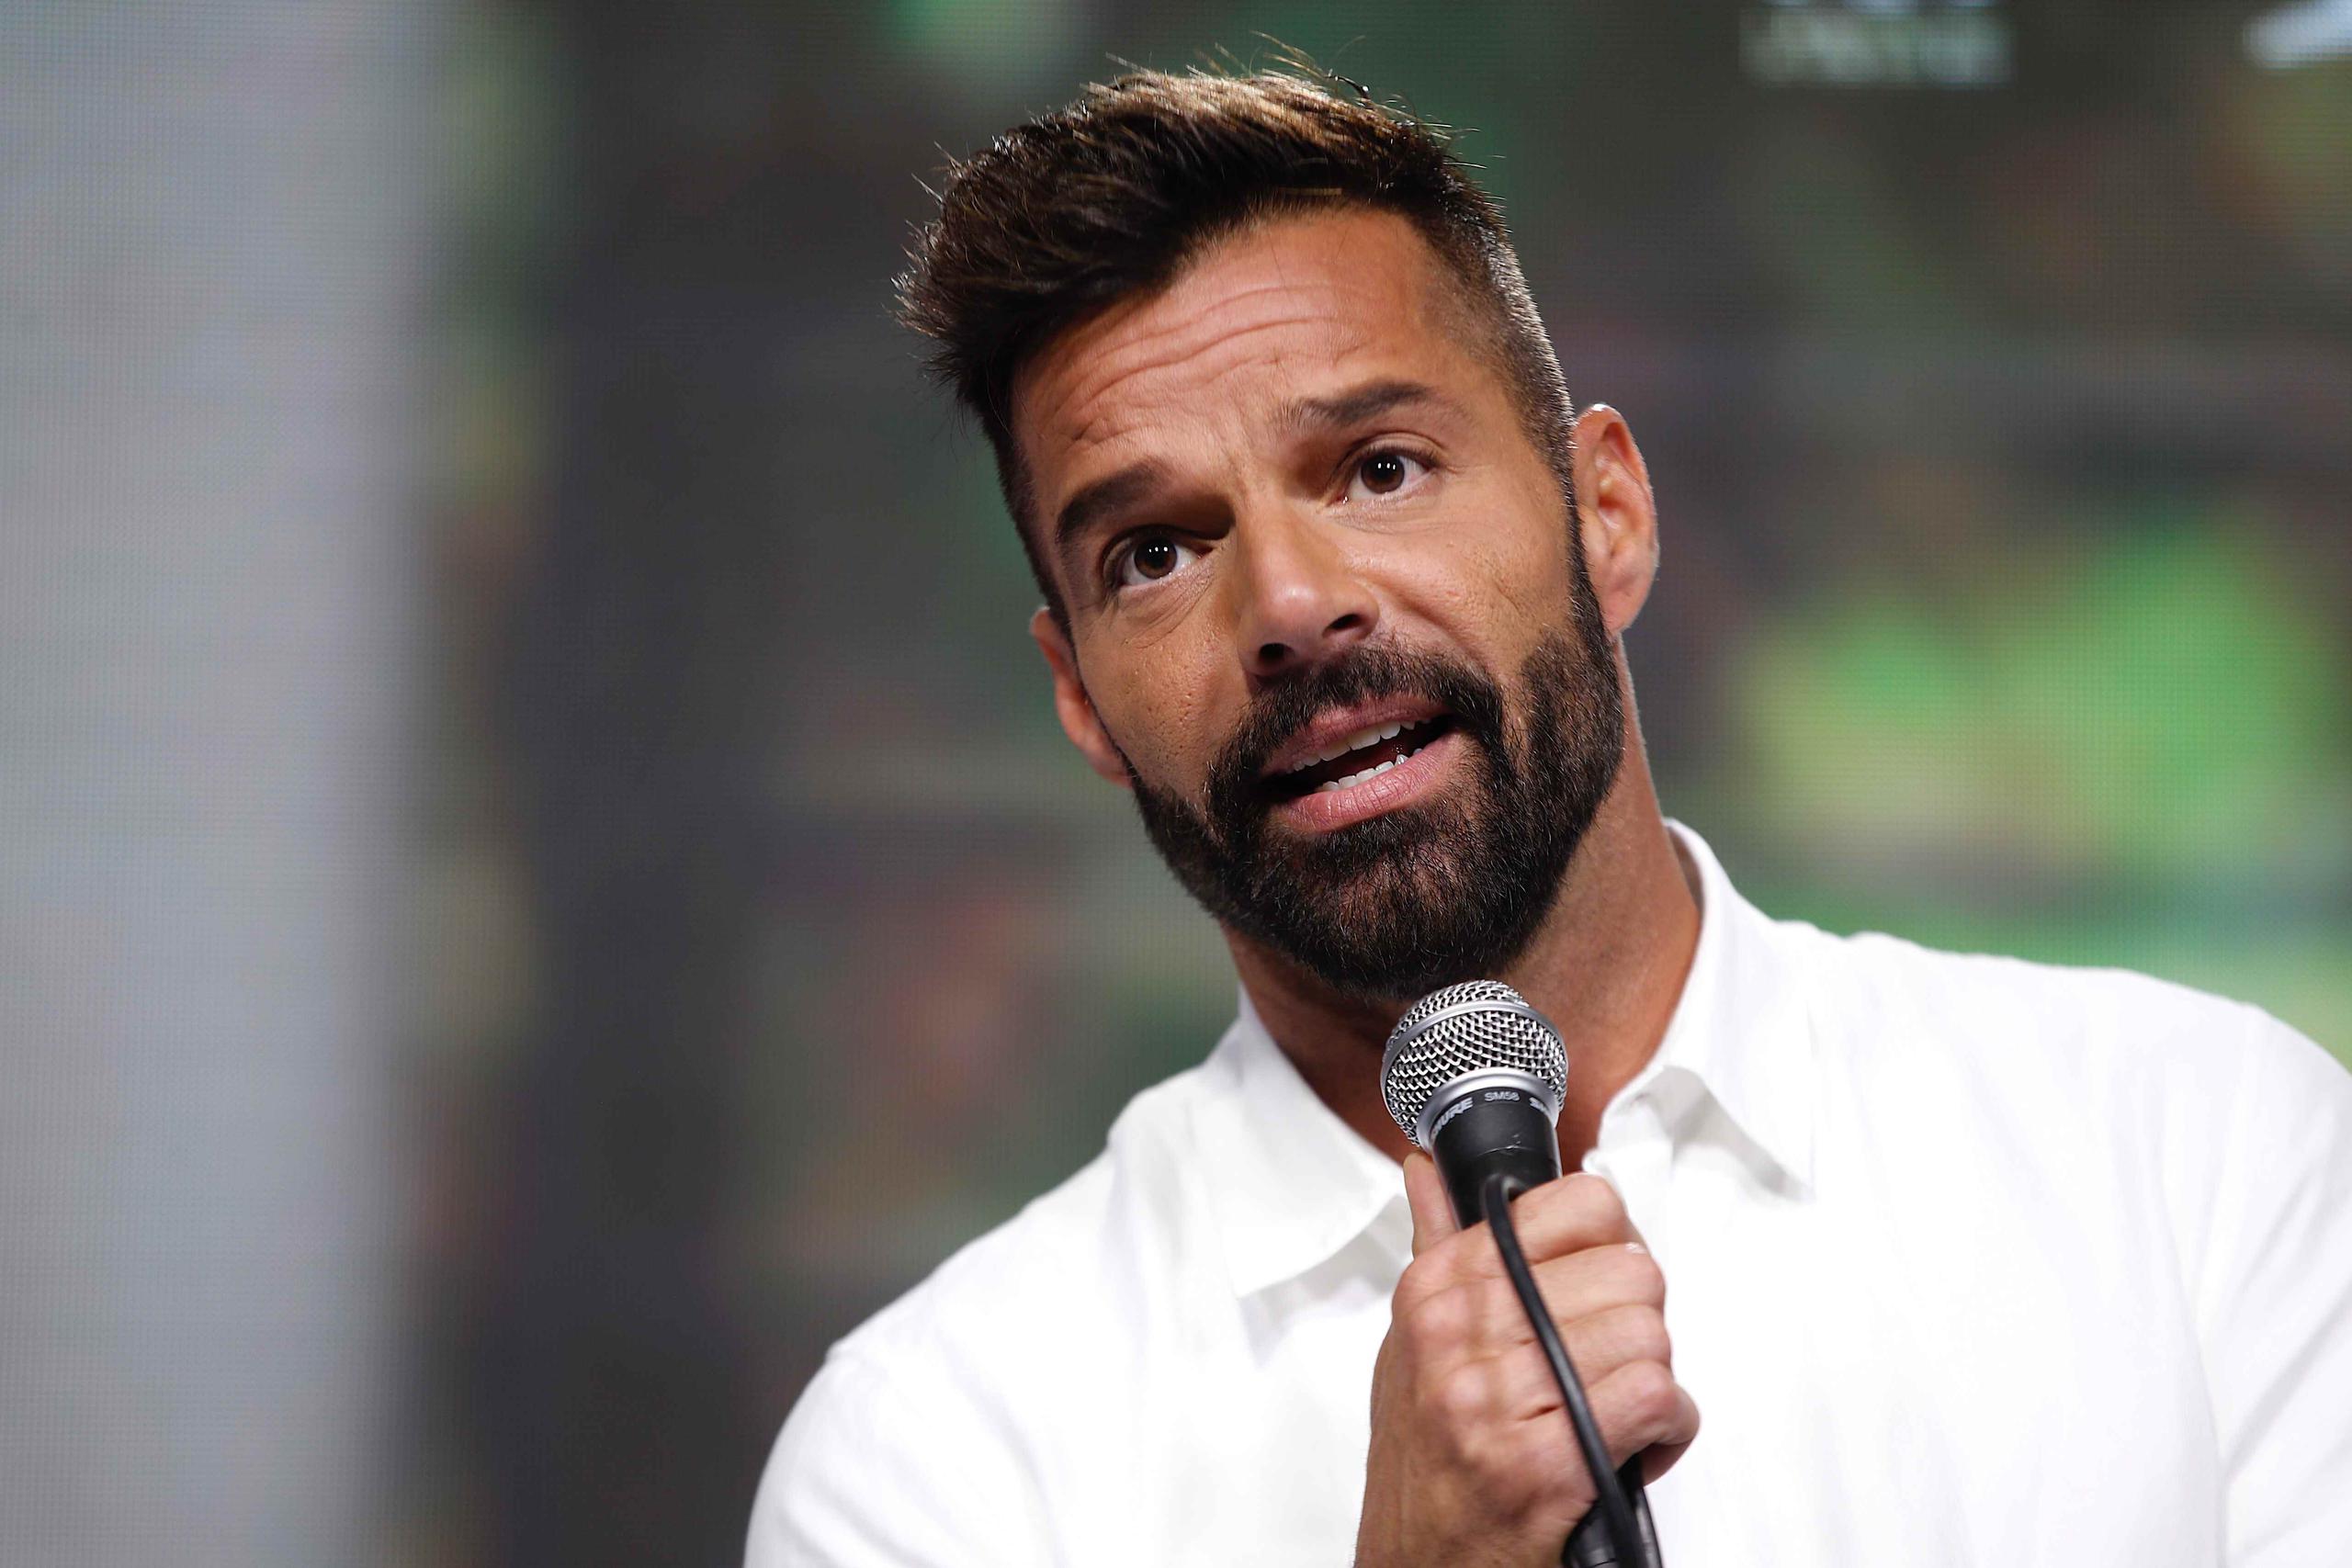 El artista Ricky Martin es padre de cuatro niños. (Archivo)